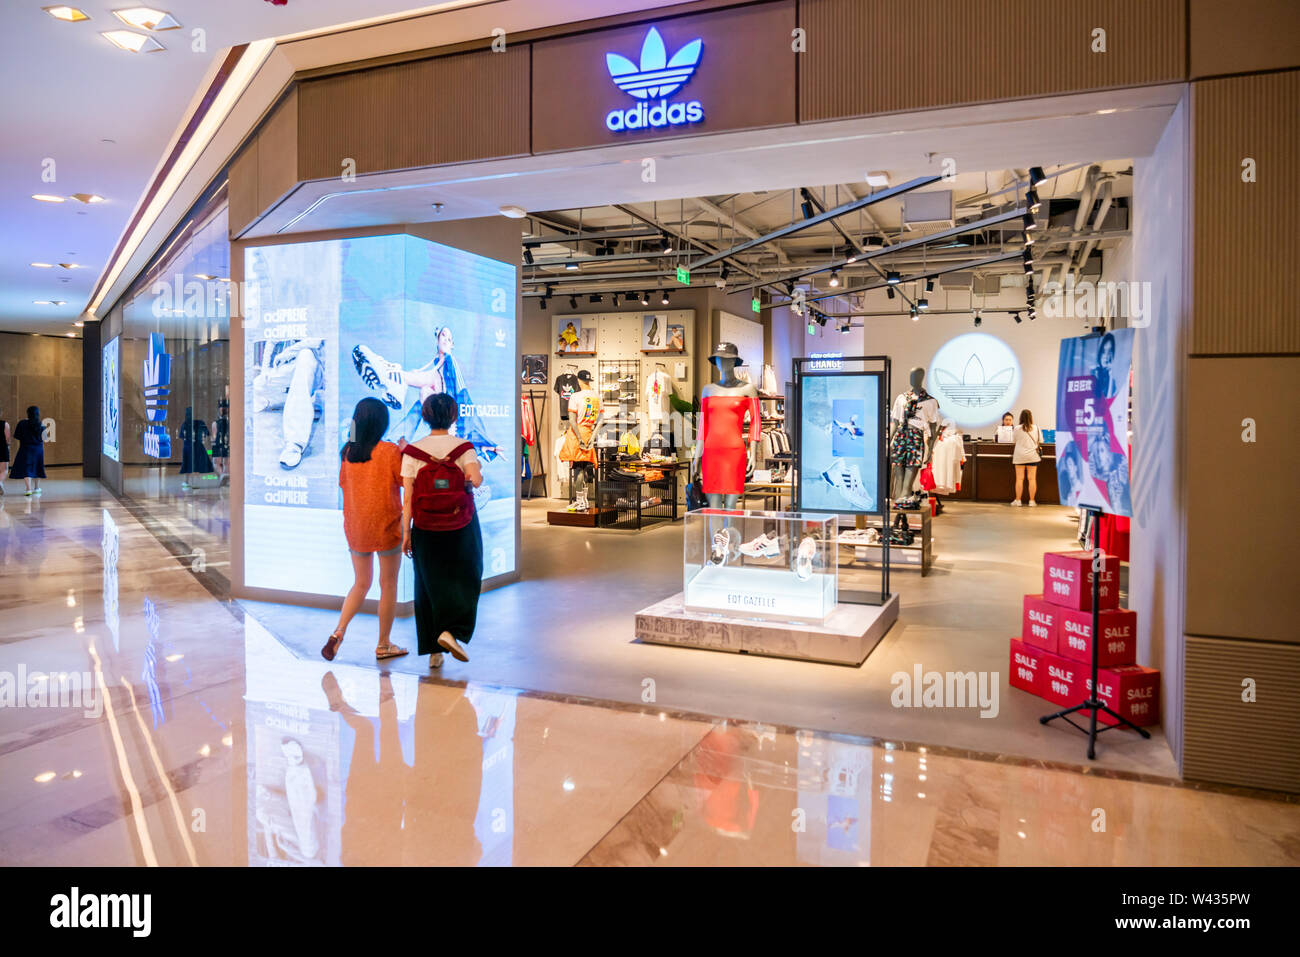 Adidas Originals, una línea de ropa deportiva casual bajo la alemana de la de ropa deportiva Adidas, tienda y logo visto en Shangai con clientes caminando hacia dentro Fotografía de